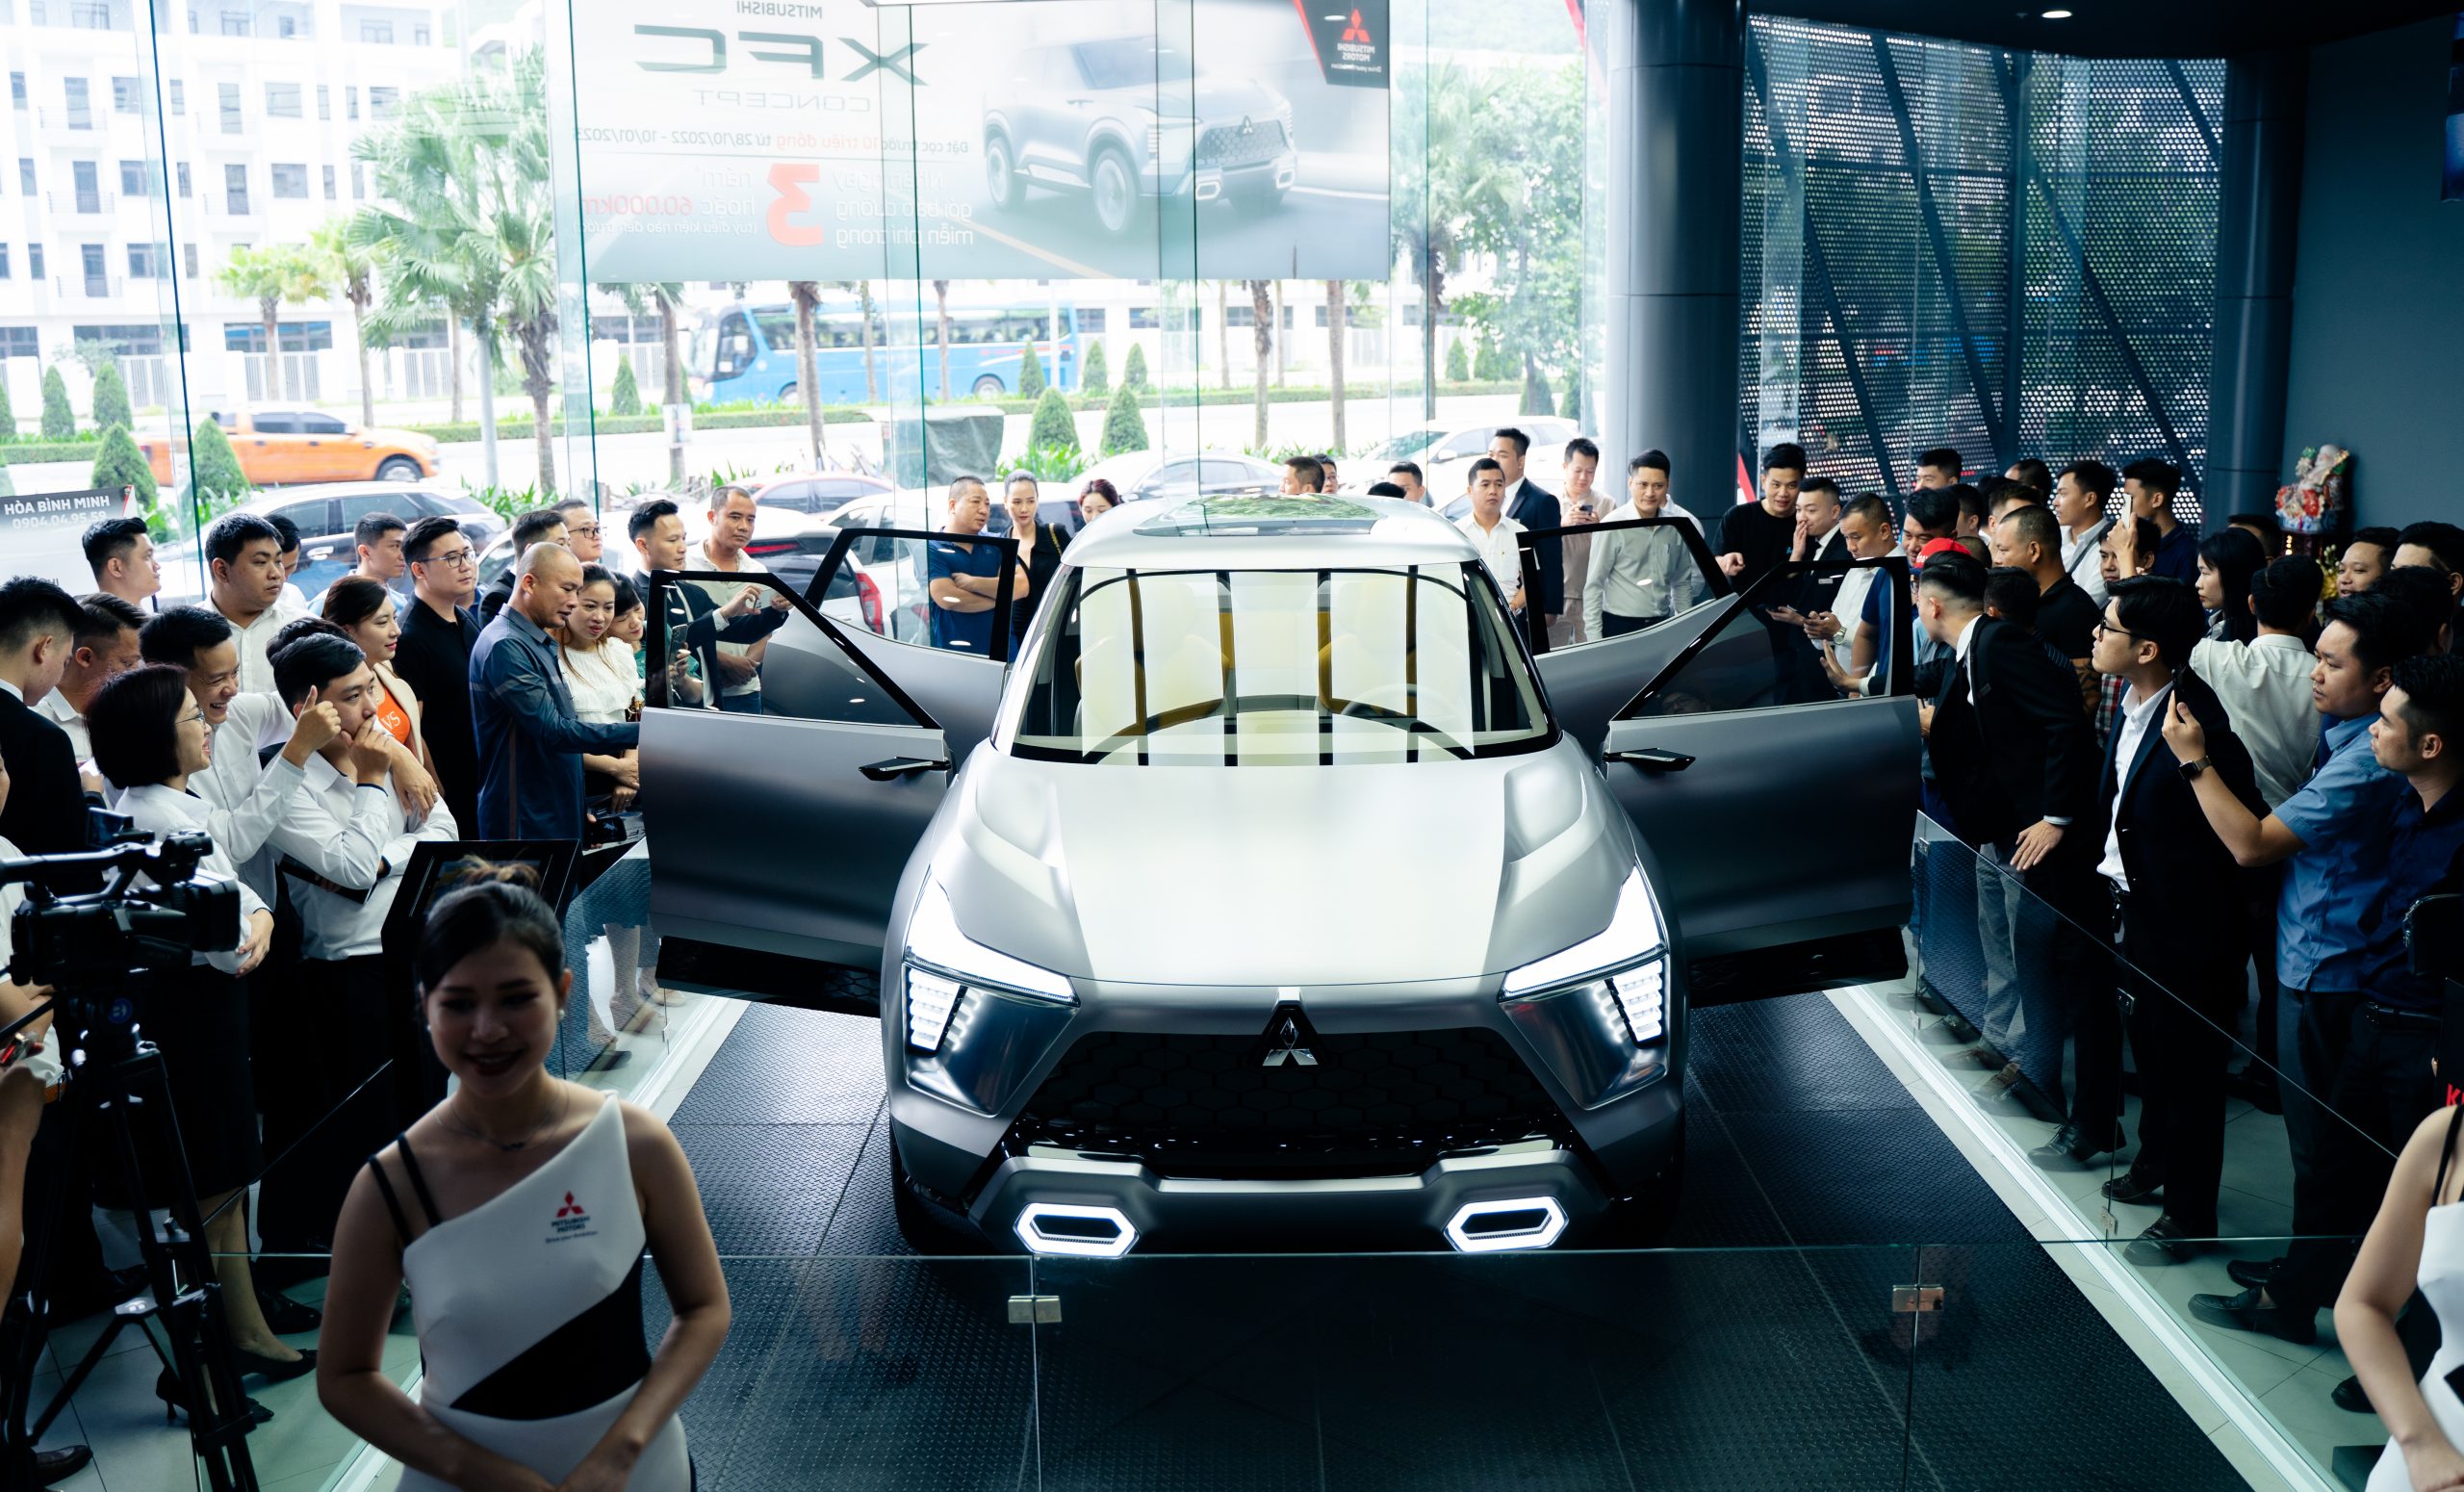 Ra mắt và giới thiệu Mitsubishi XFC Concept tại Mitsubishi Quảng Ninh